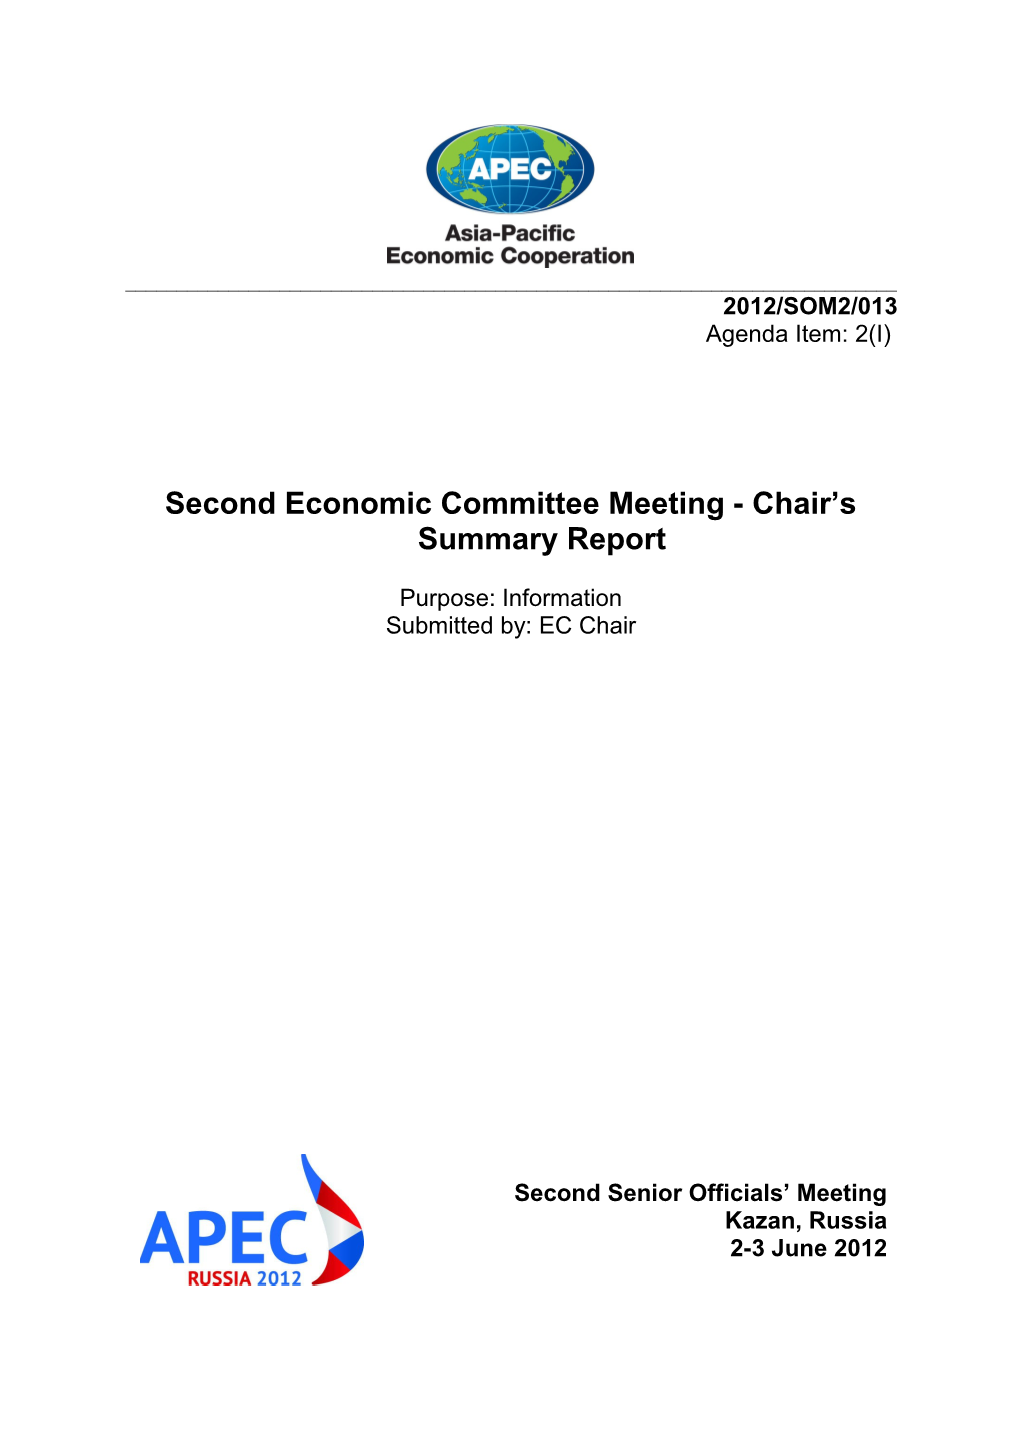 APEC Meeting Documents s7